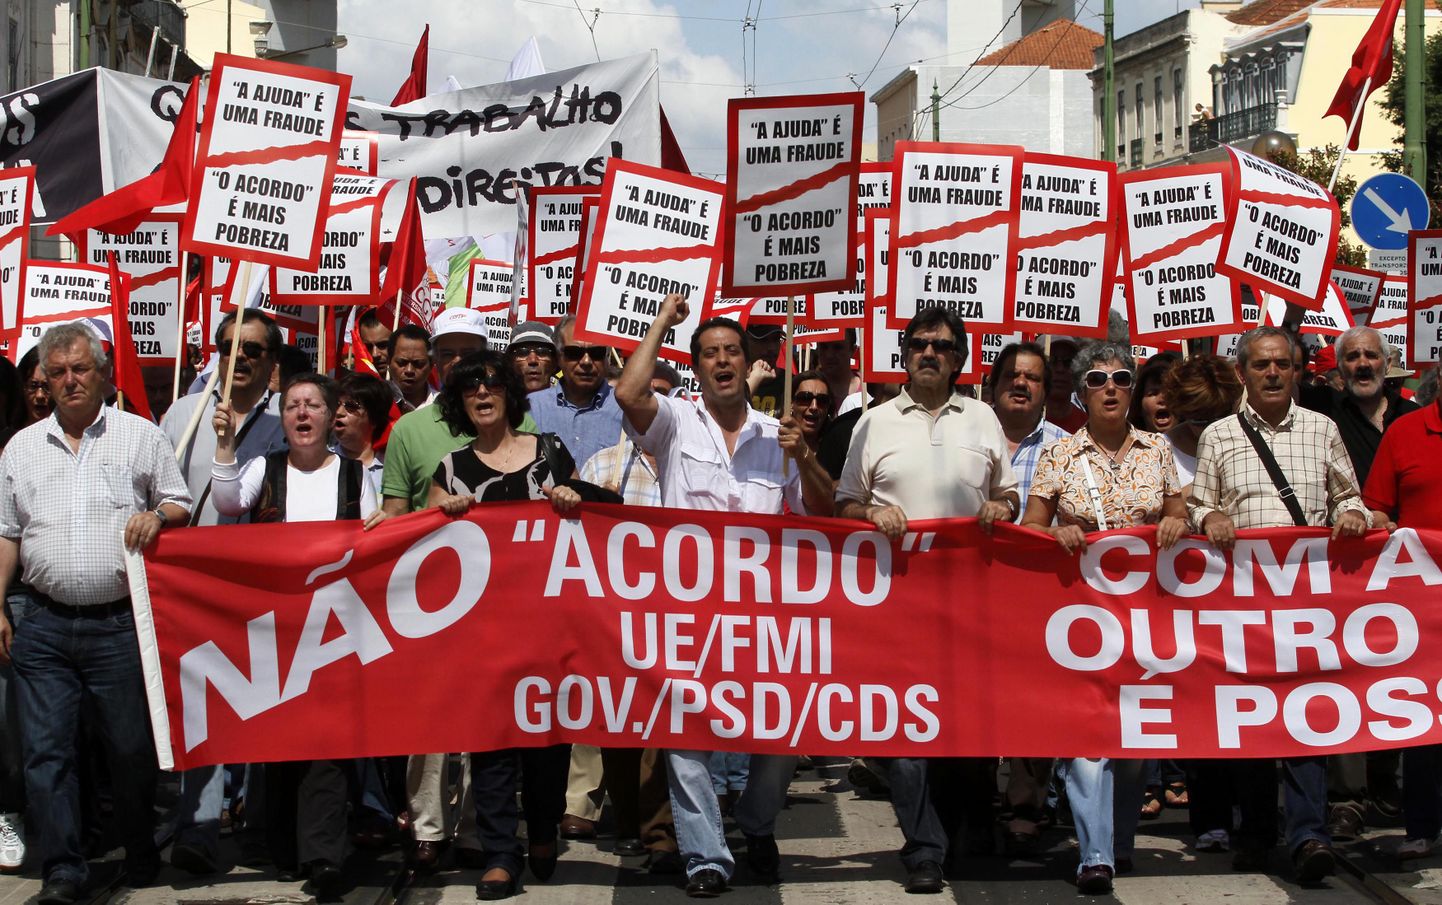 Акция протеста португальских профсоюзов против пакета помощи Португалии на условиях ЕС и МВФ